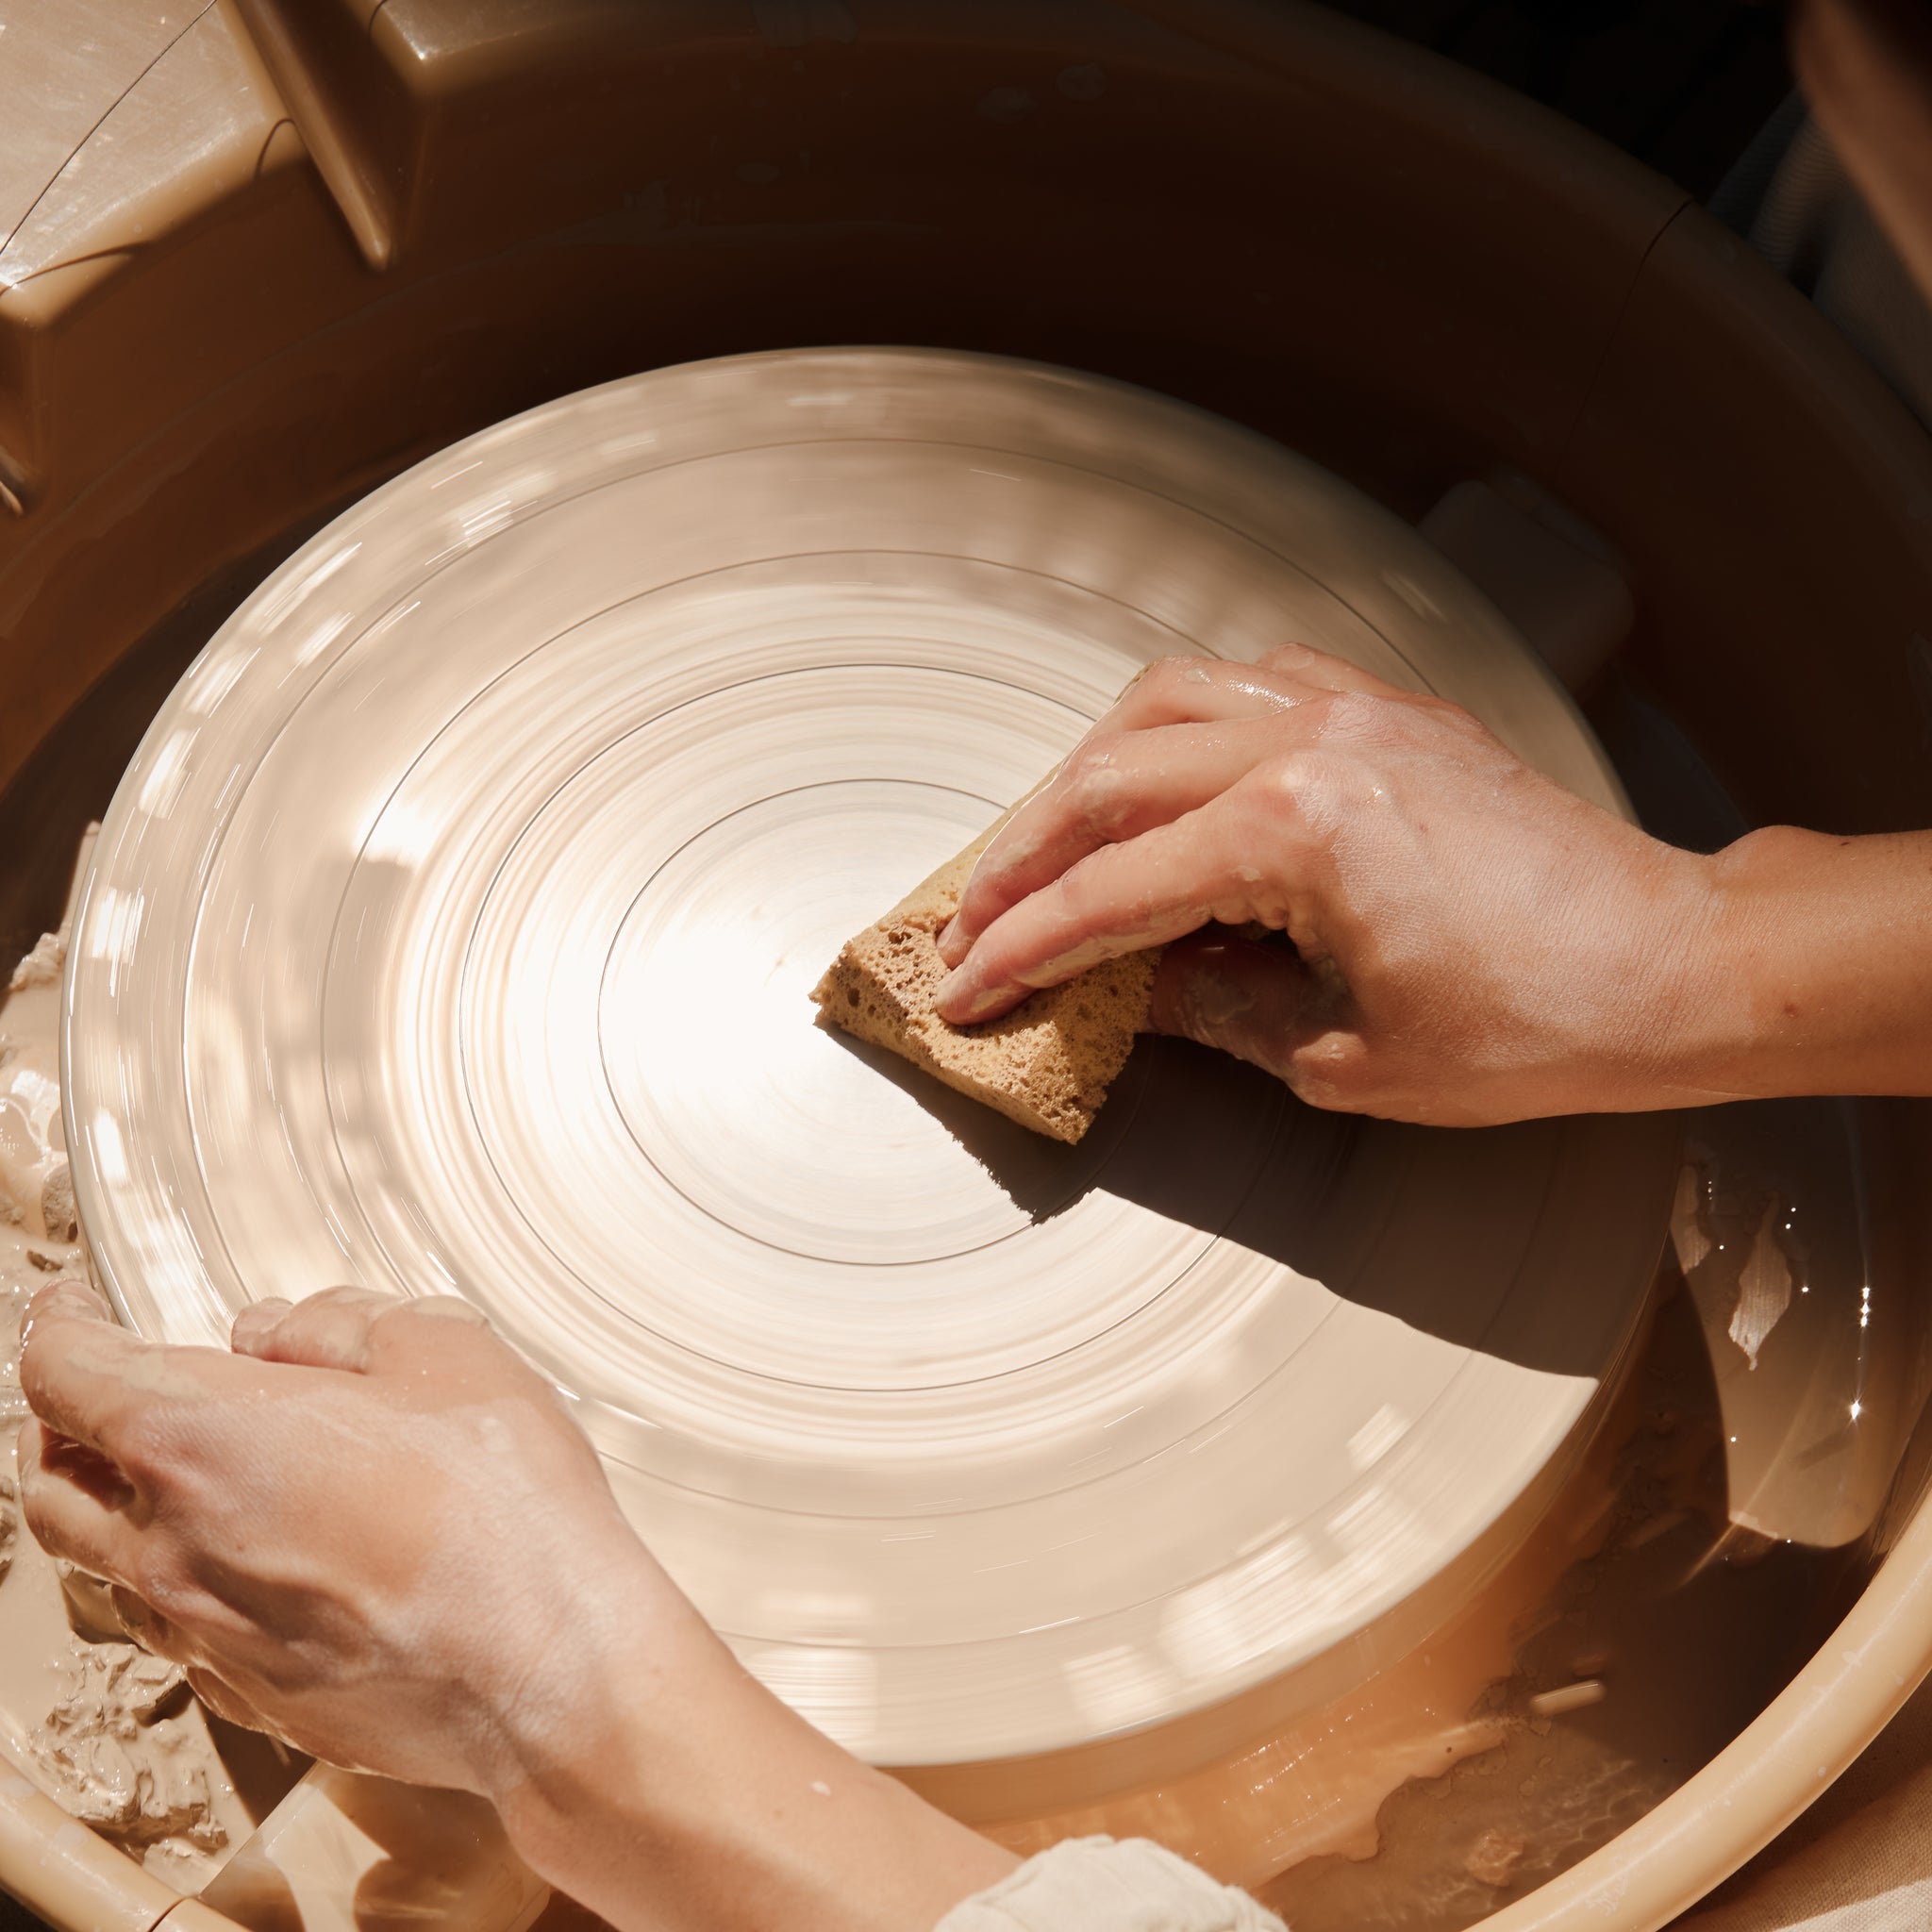 Open studio throwing wheel pottery studio berlin Prenzlauer Berg claï studio